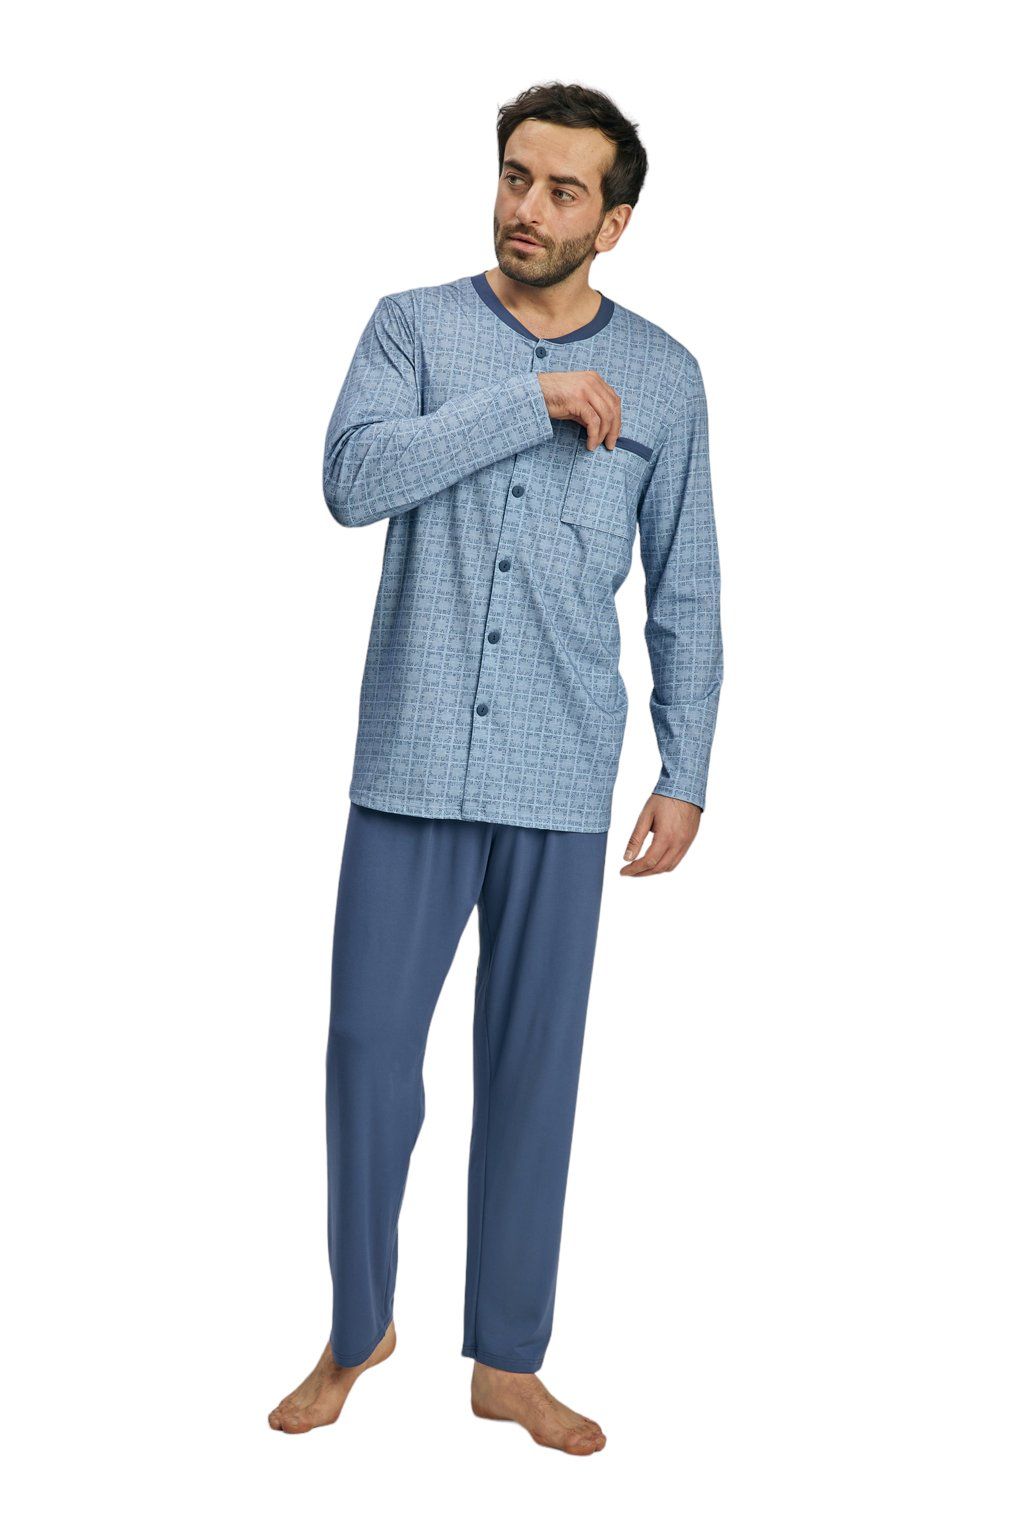 Pánské pyžamo s dlouhým rukávem, 204140 416, modrá - Velikost L Wadima